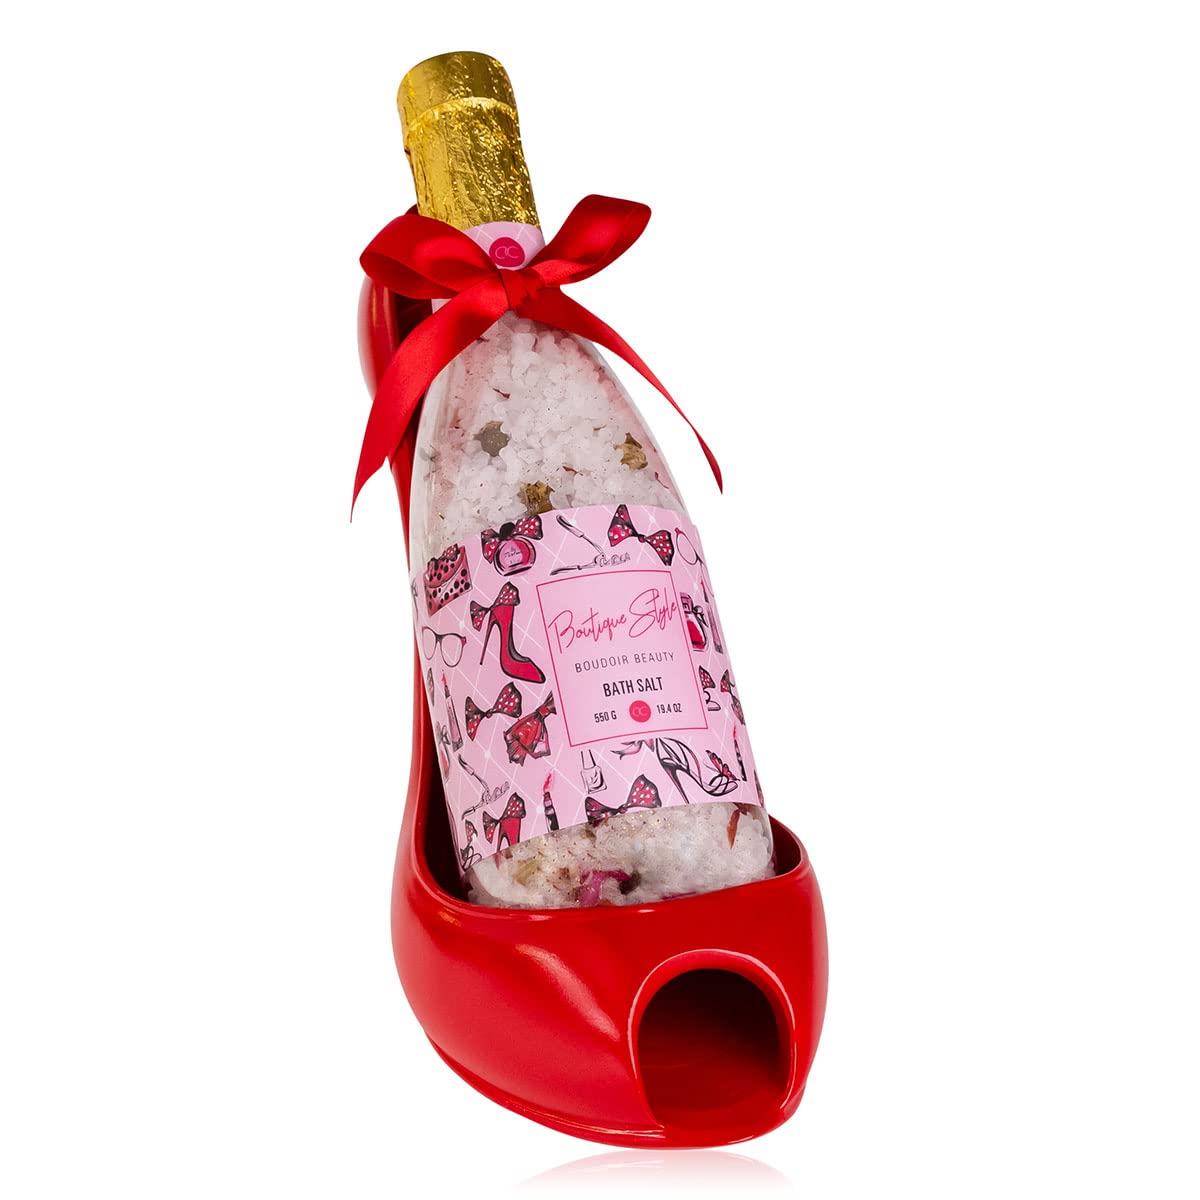 Accentra - Duschset Frauen Geschenkset im Keramik- Pump als Weinflaschen-Halter, 2 teiliges Pflegeset mit Badesalz – Wellness Geschenk Set zum Geburtstag, Valentinstag & Weihnachten